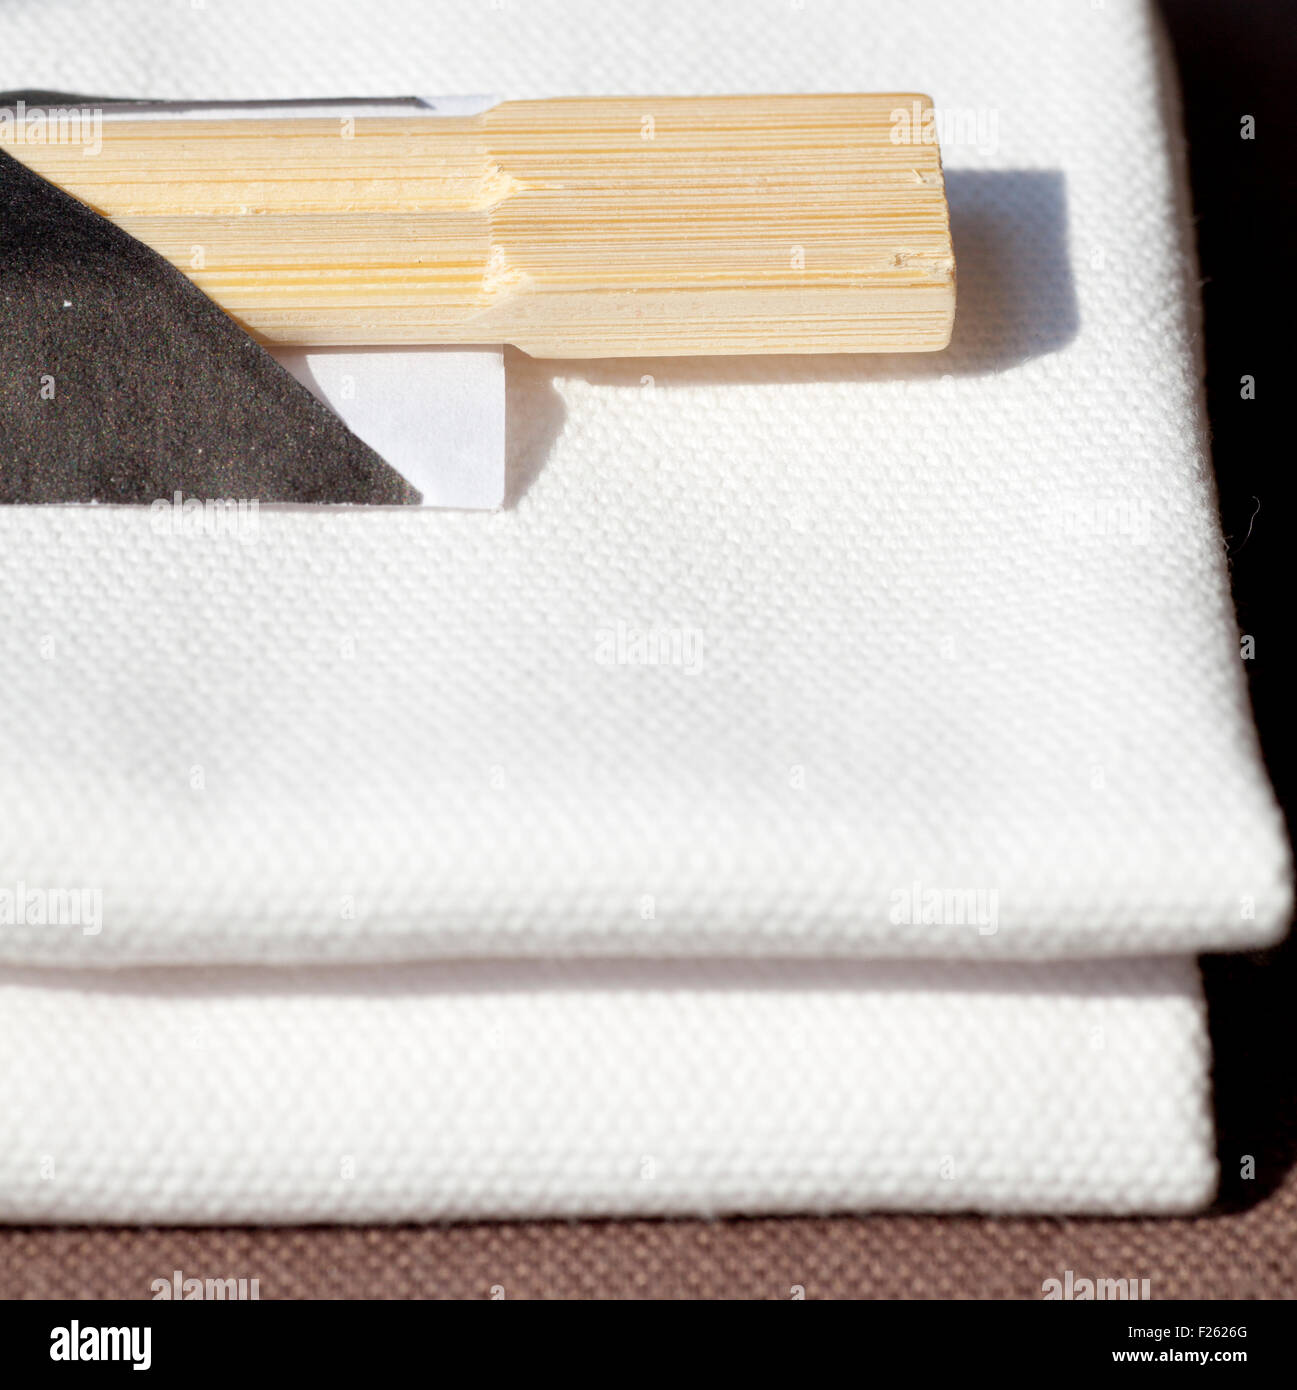 Asian chopstick on a white napkin Stock Photo